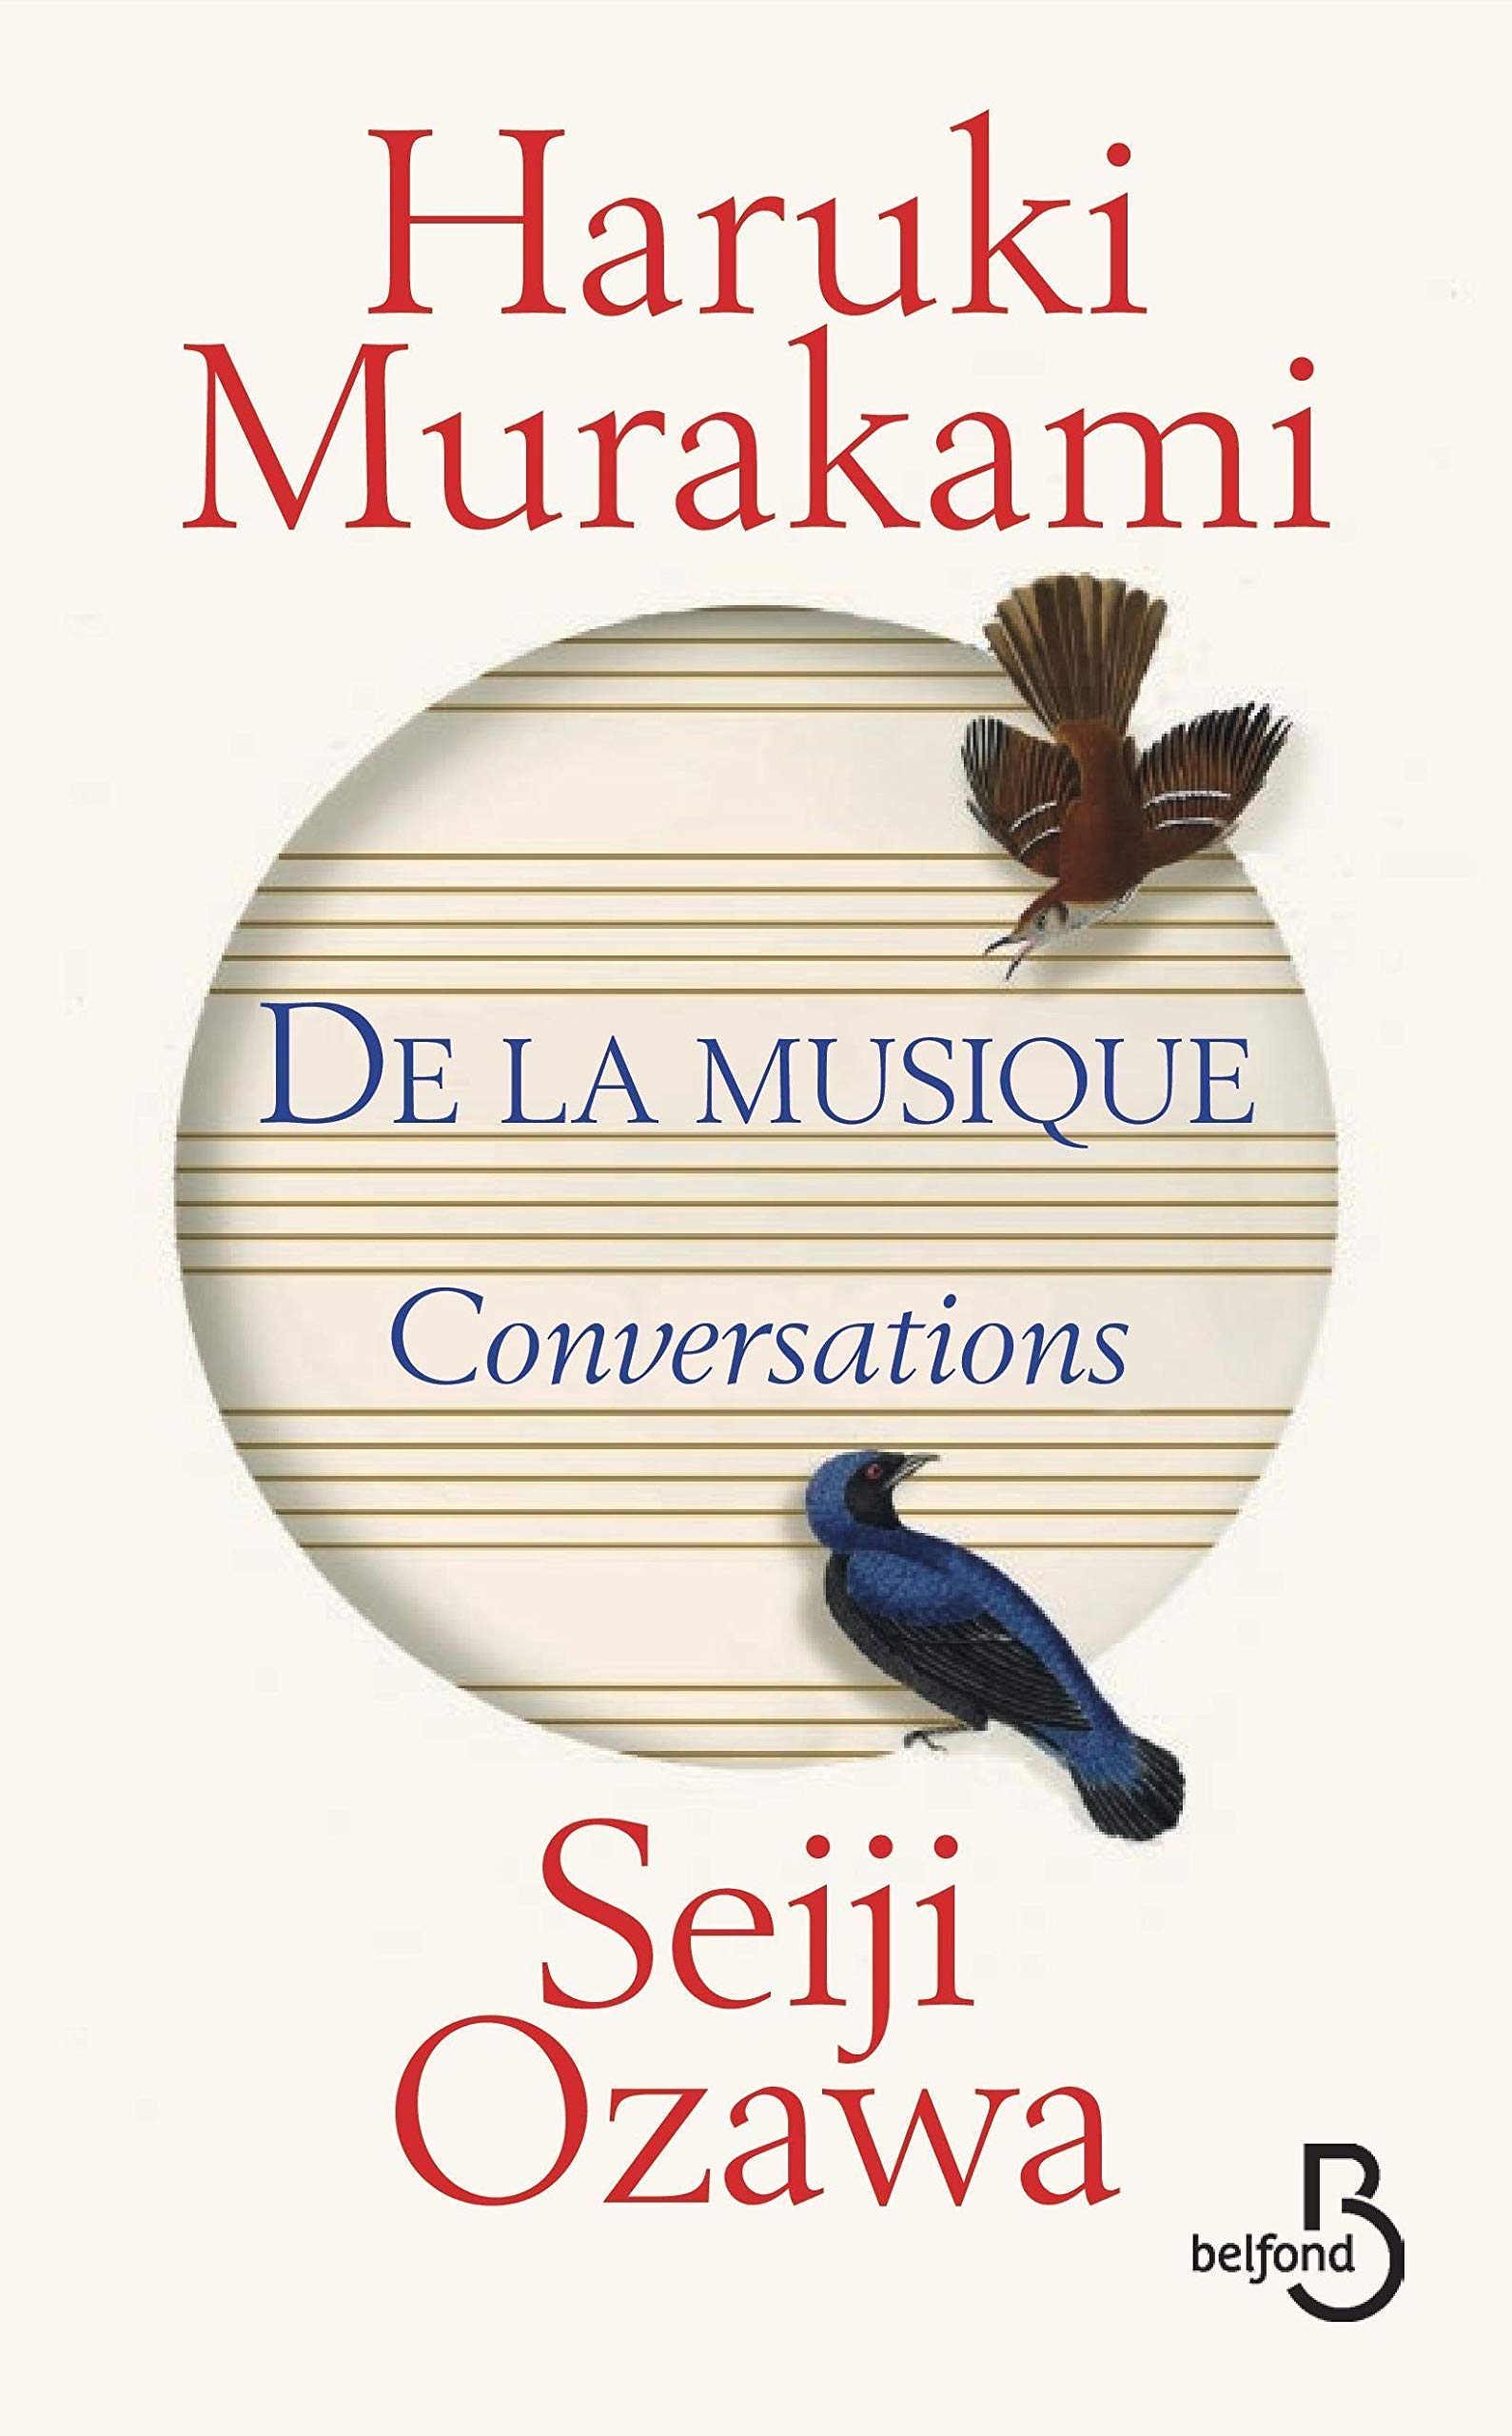 « DE LA MUSIQUE Conversations ». Conversations entre l’écrivain Haruki Murakami et le chef d’orchestre Seiji Ozawa.